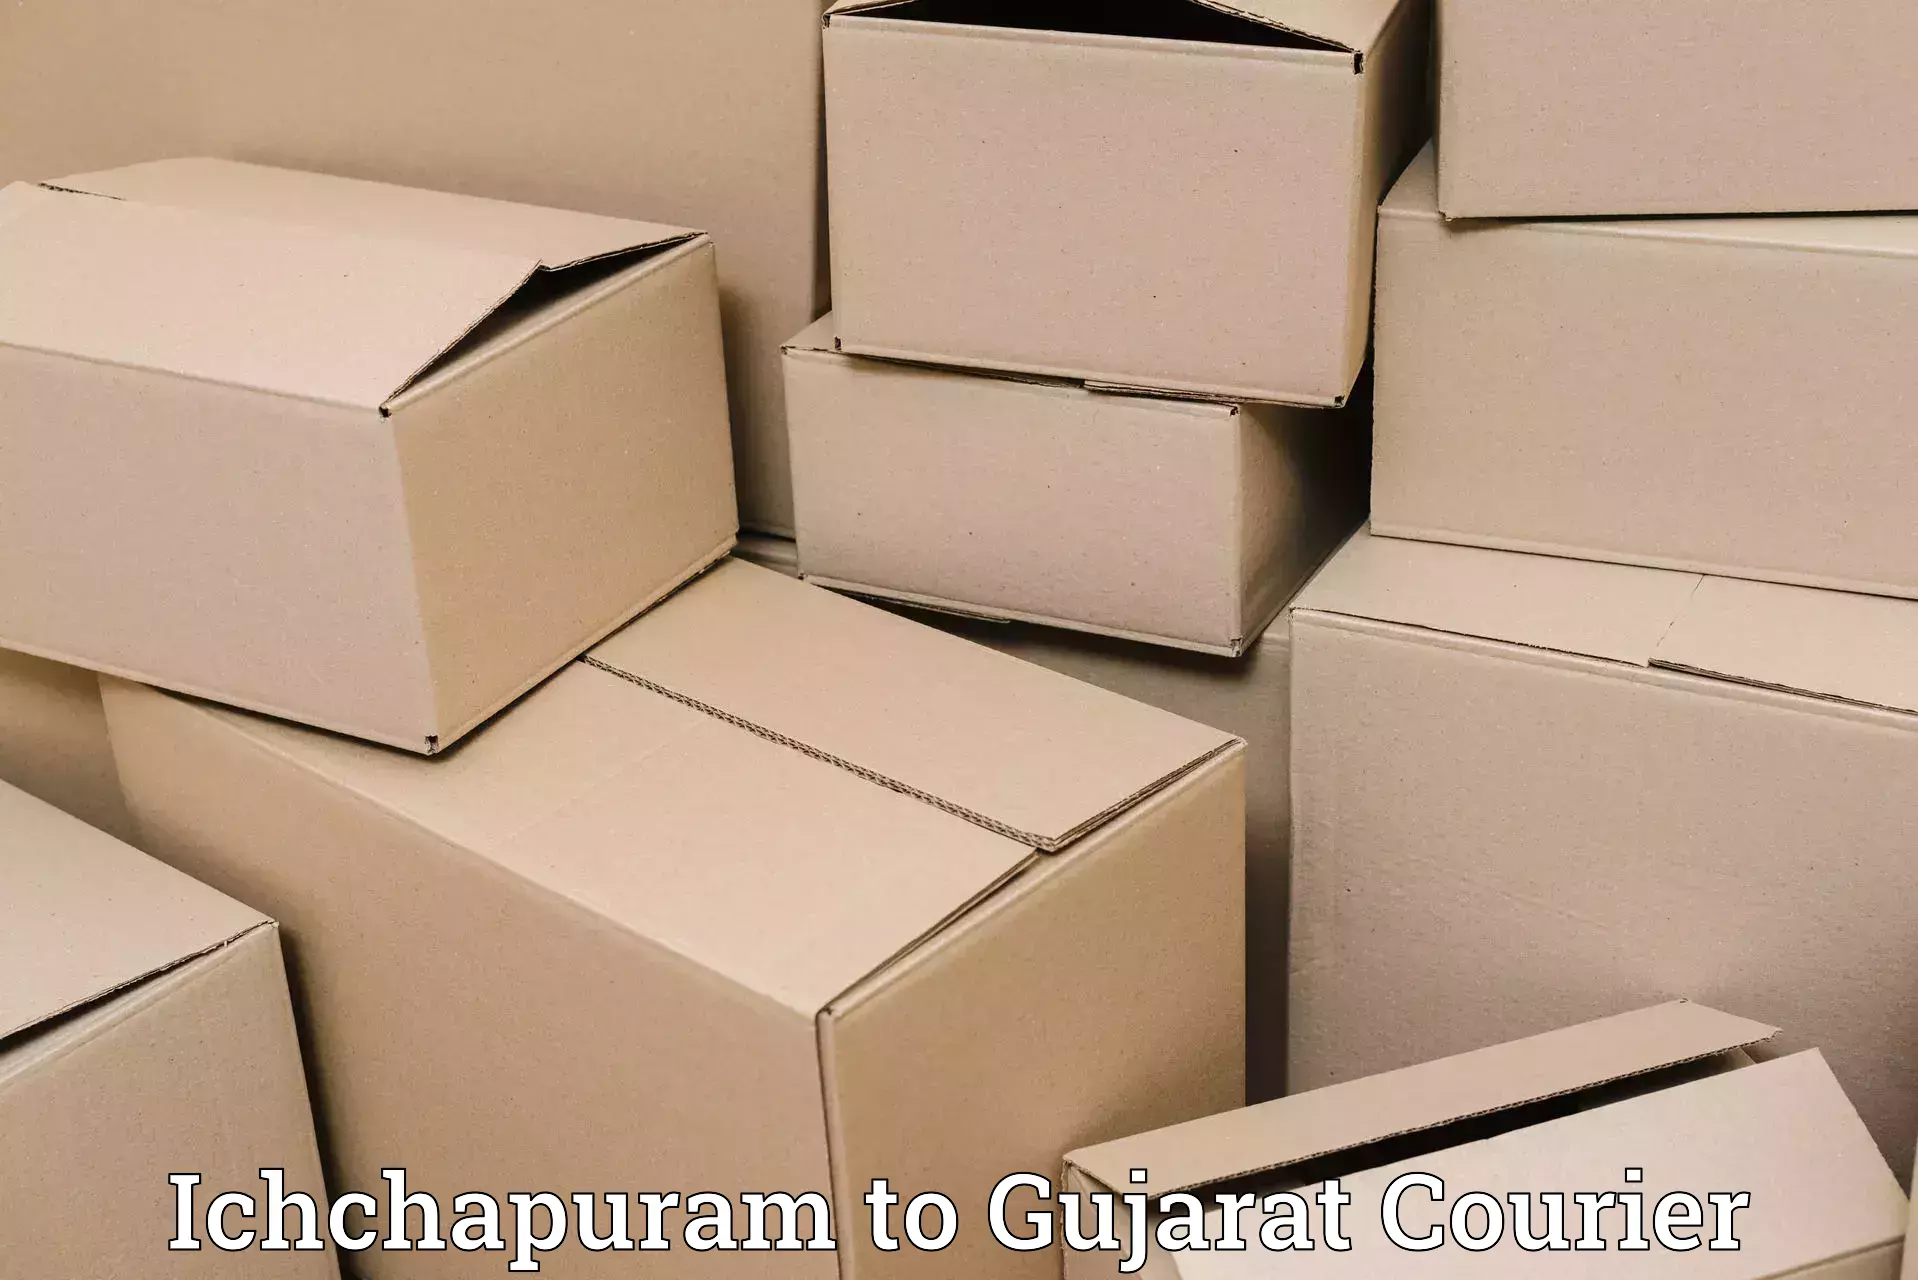 Business delivery service Ichchapuram to Gujarat